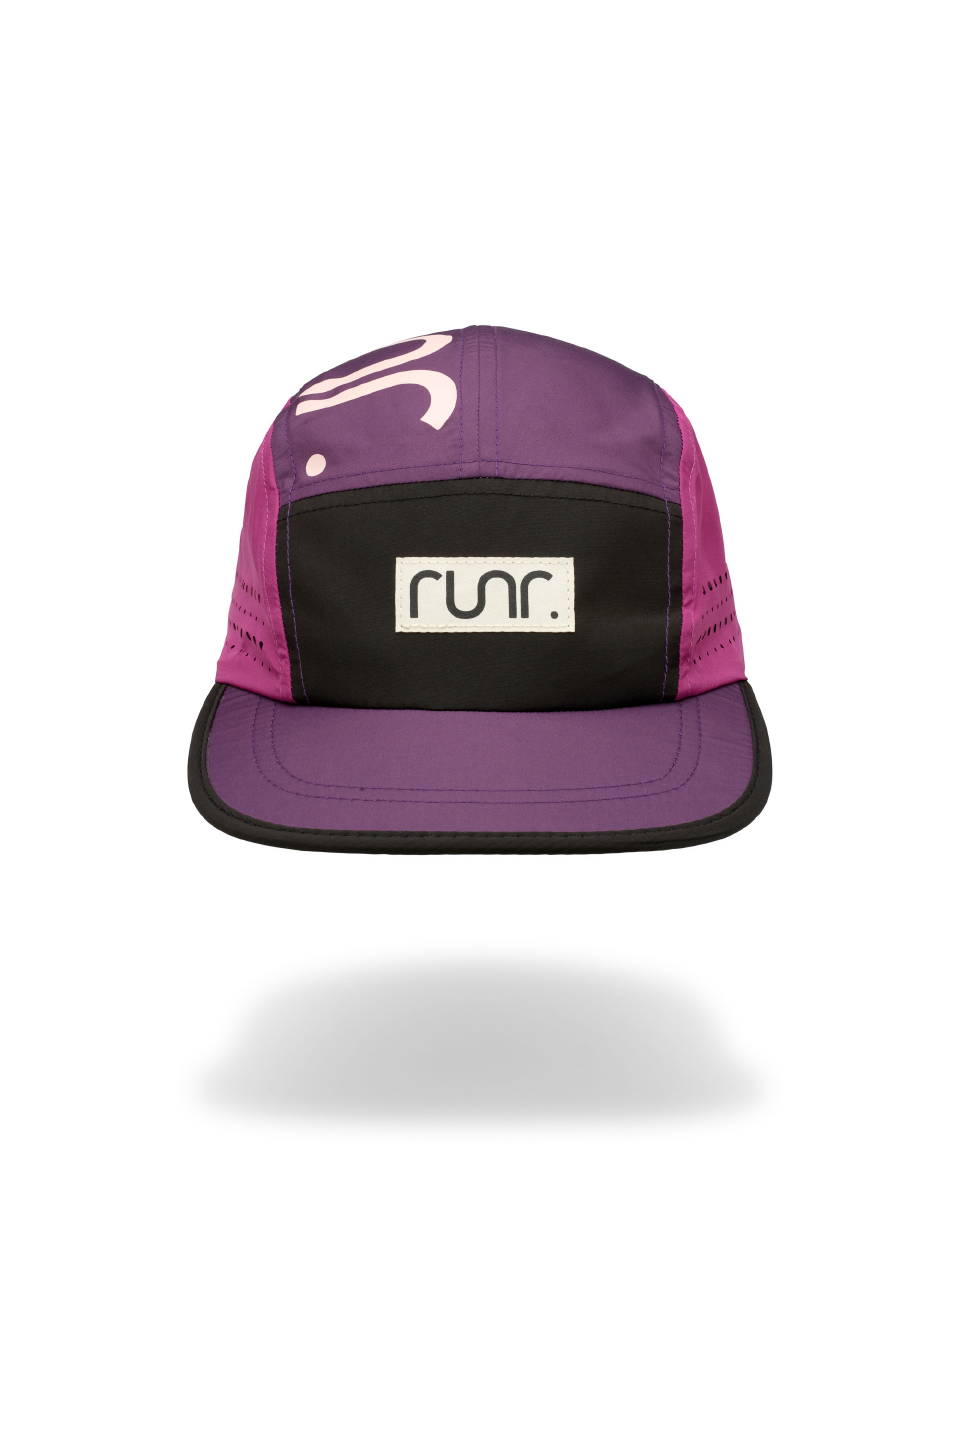 Runr Munich Technical Running Hat